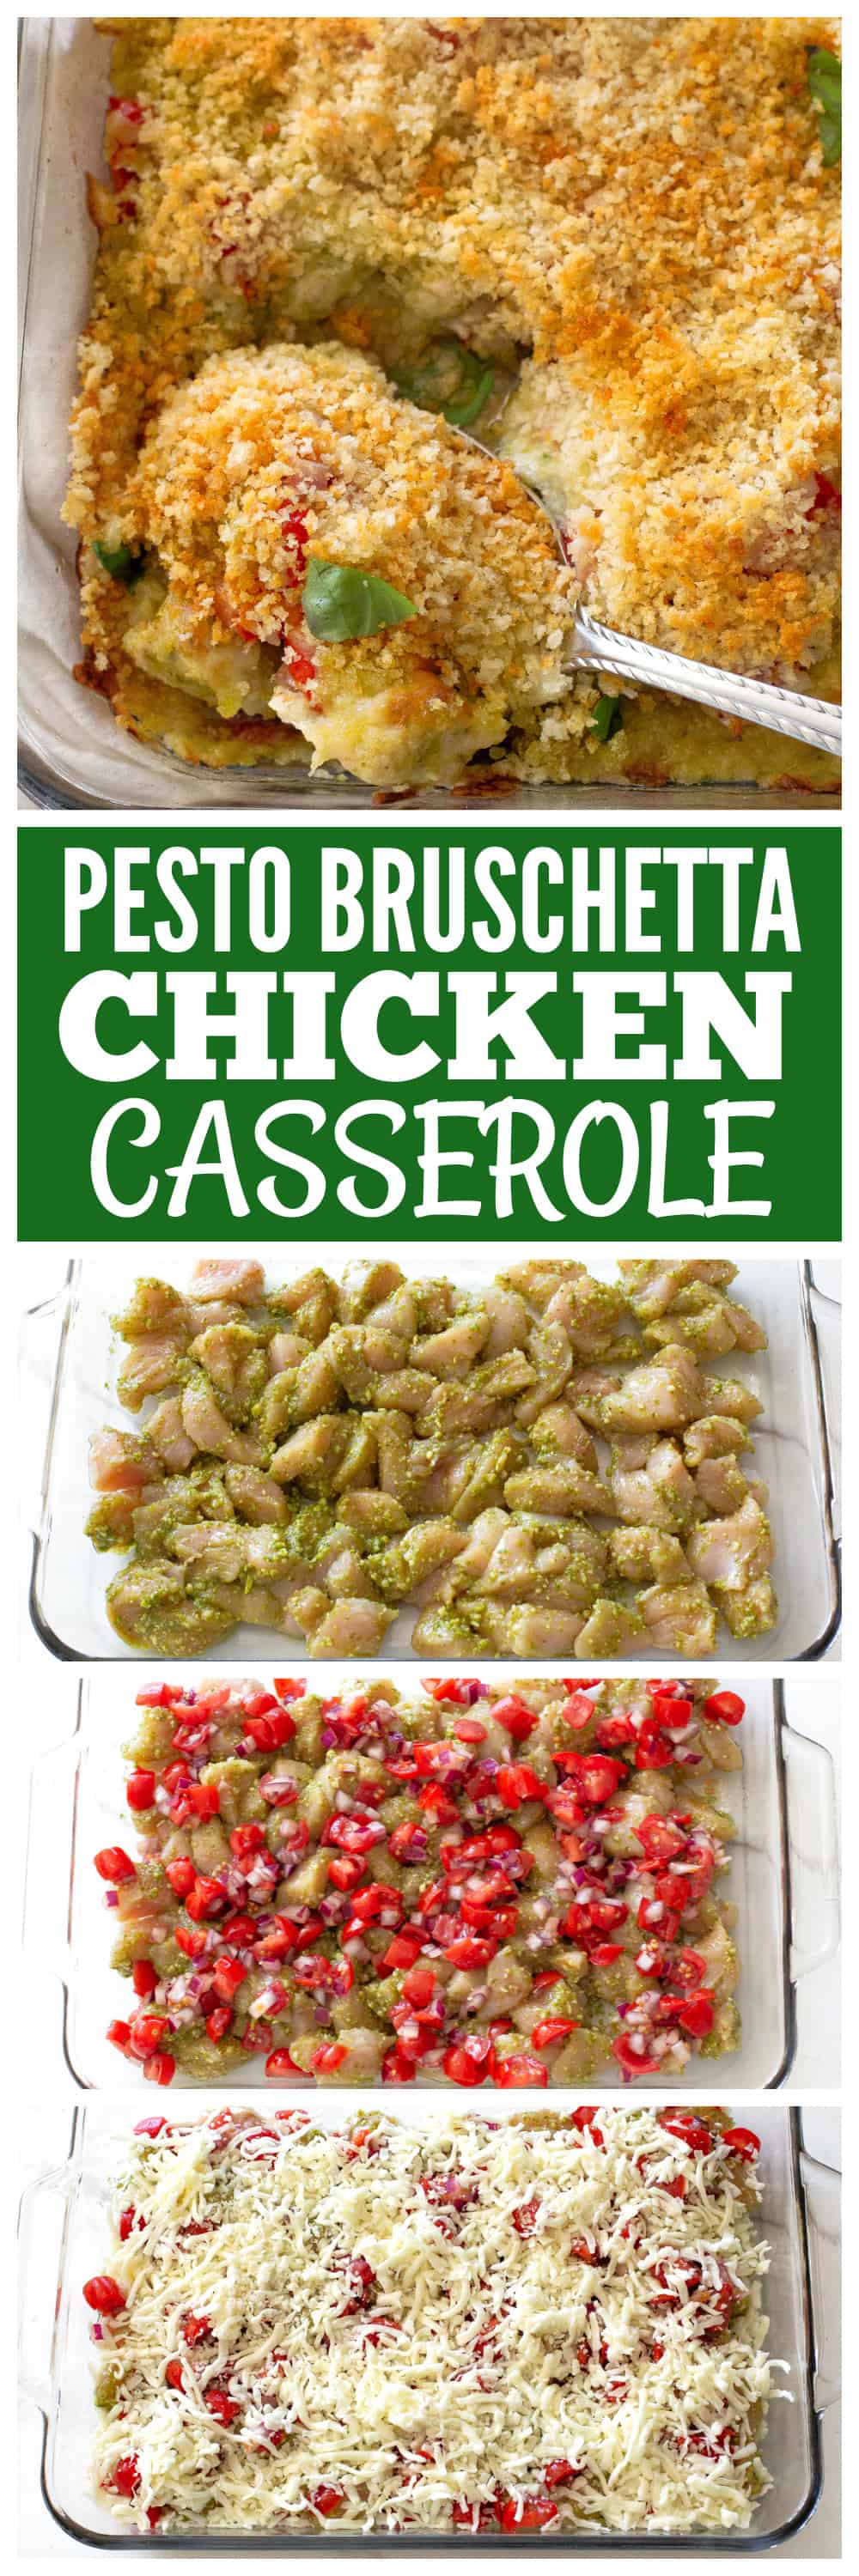 Bruschetta Pesto Chicken Casserole